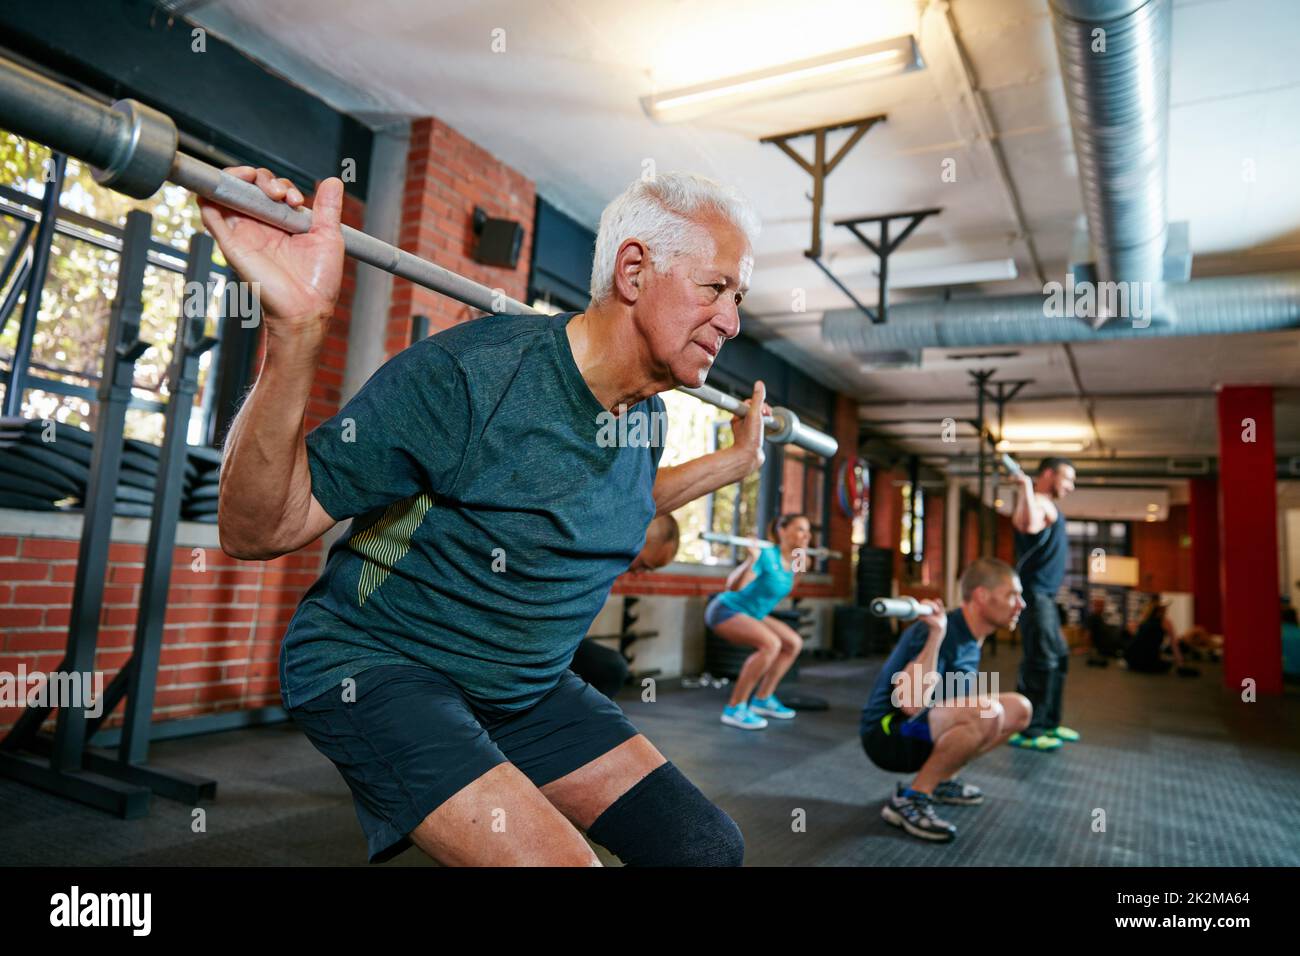 Das eigentliche Workout beginnt, wenn du aufhören willst. Aufnahme eines älteren Mannes, der in einem Fitnessclub arbeitet, wobei die Menschen im Hintergrund verschwommen sind. Stockfoto